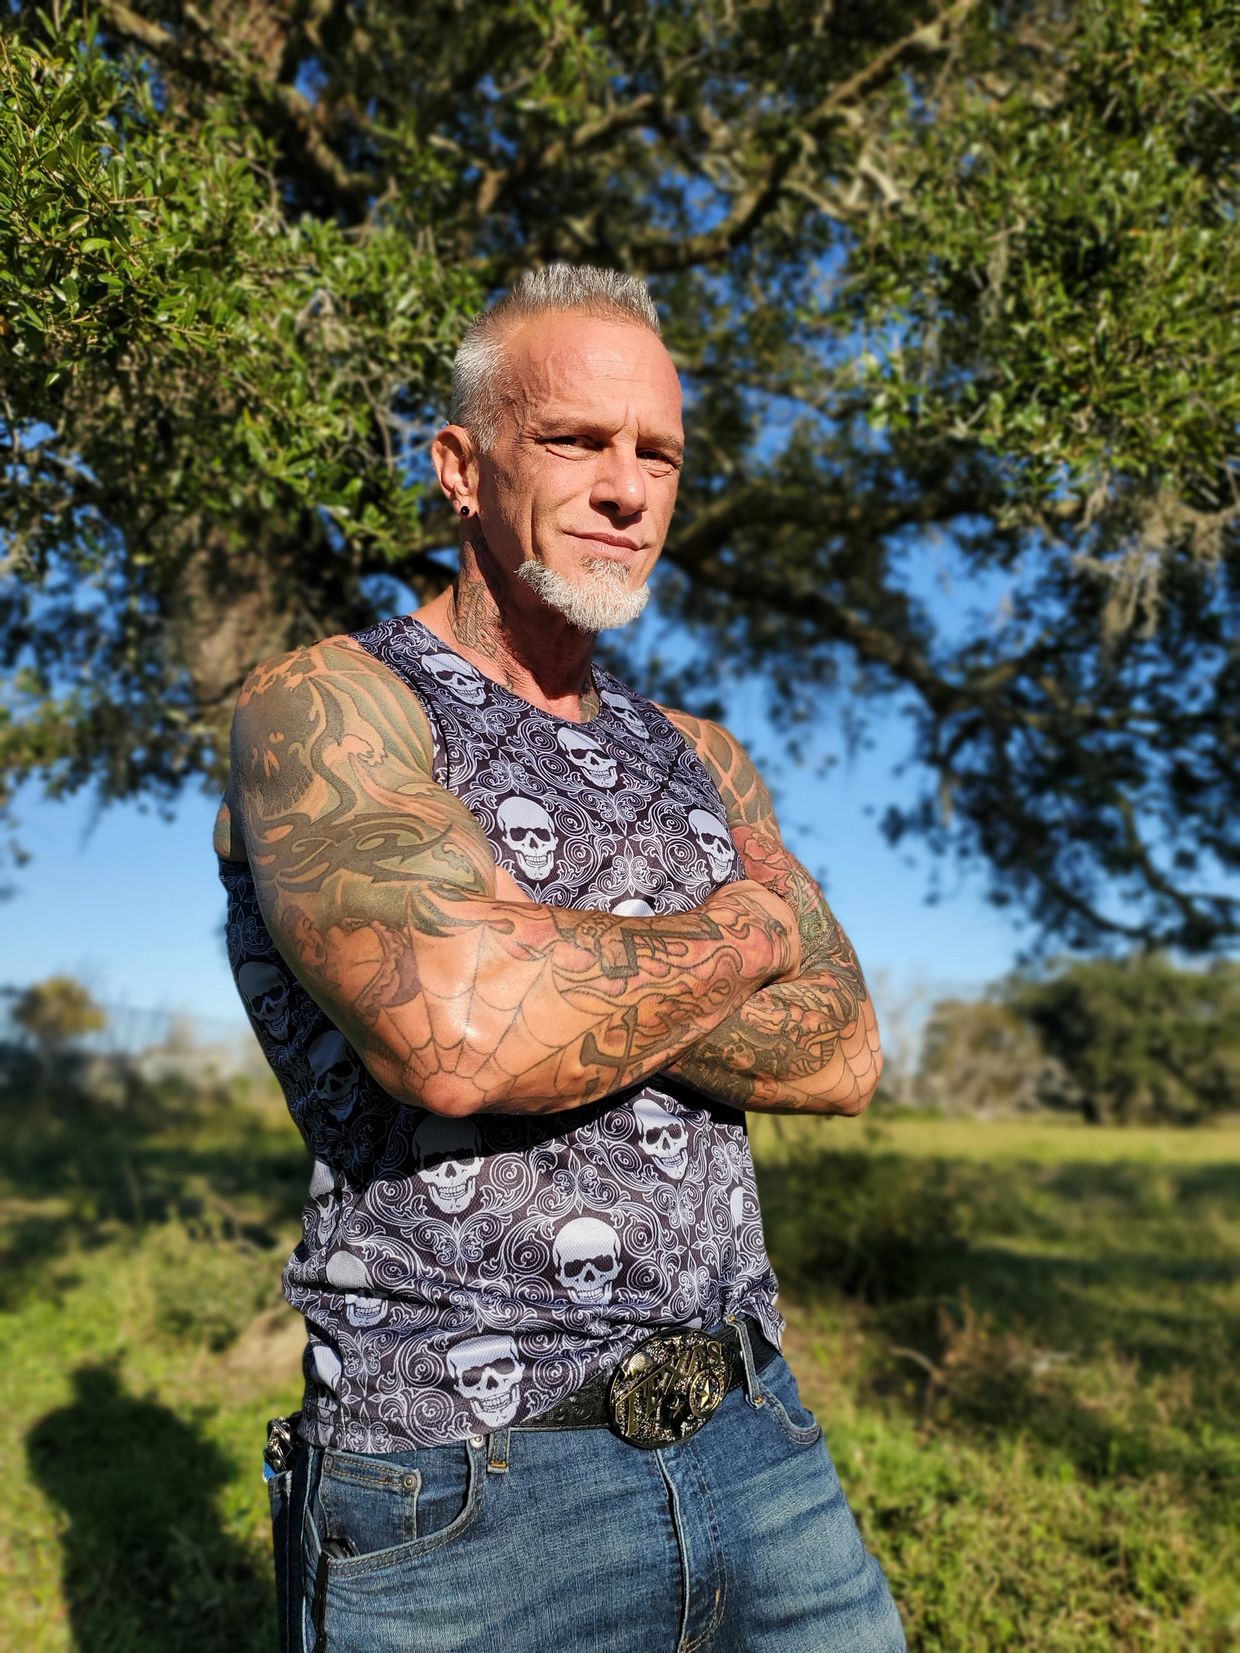 long term HIV/AIDS survivor advocate educator activist Bob Bowers One Tough Pirate Houston, Texas